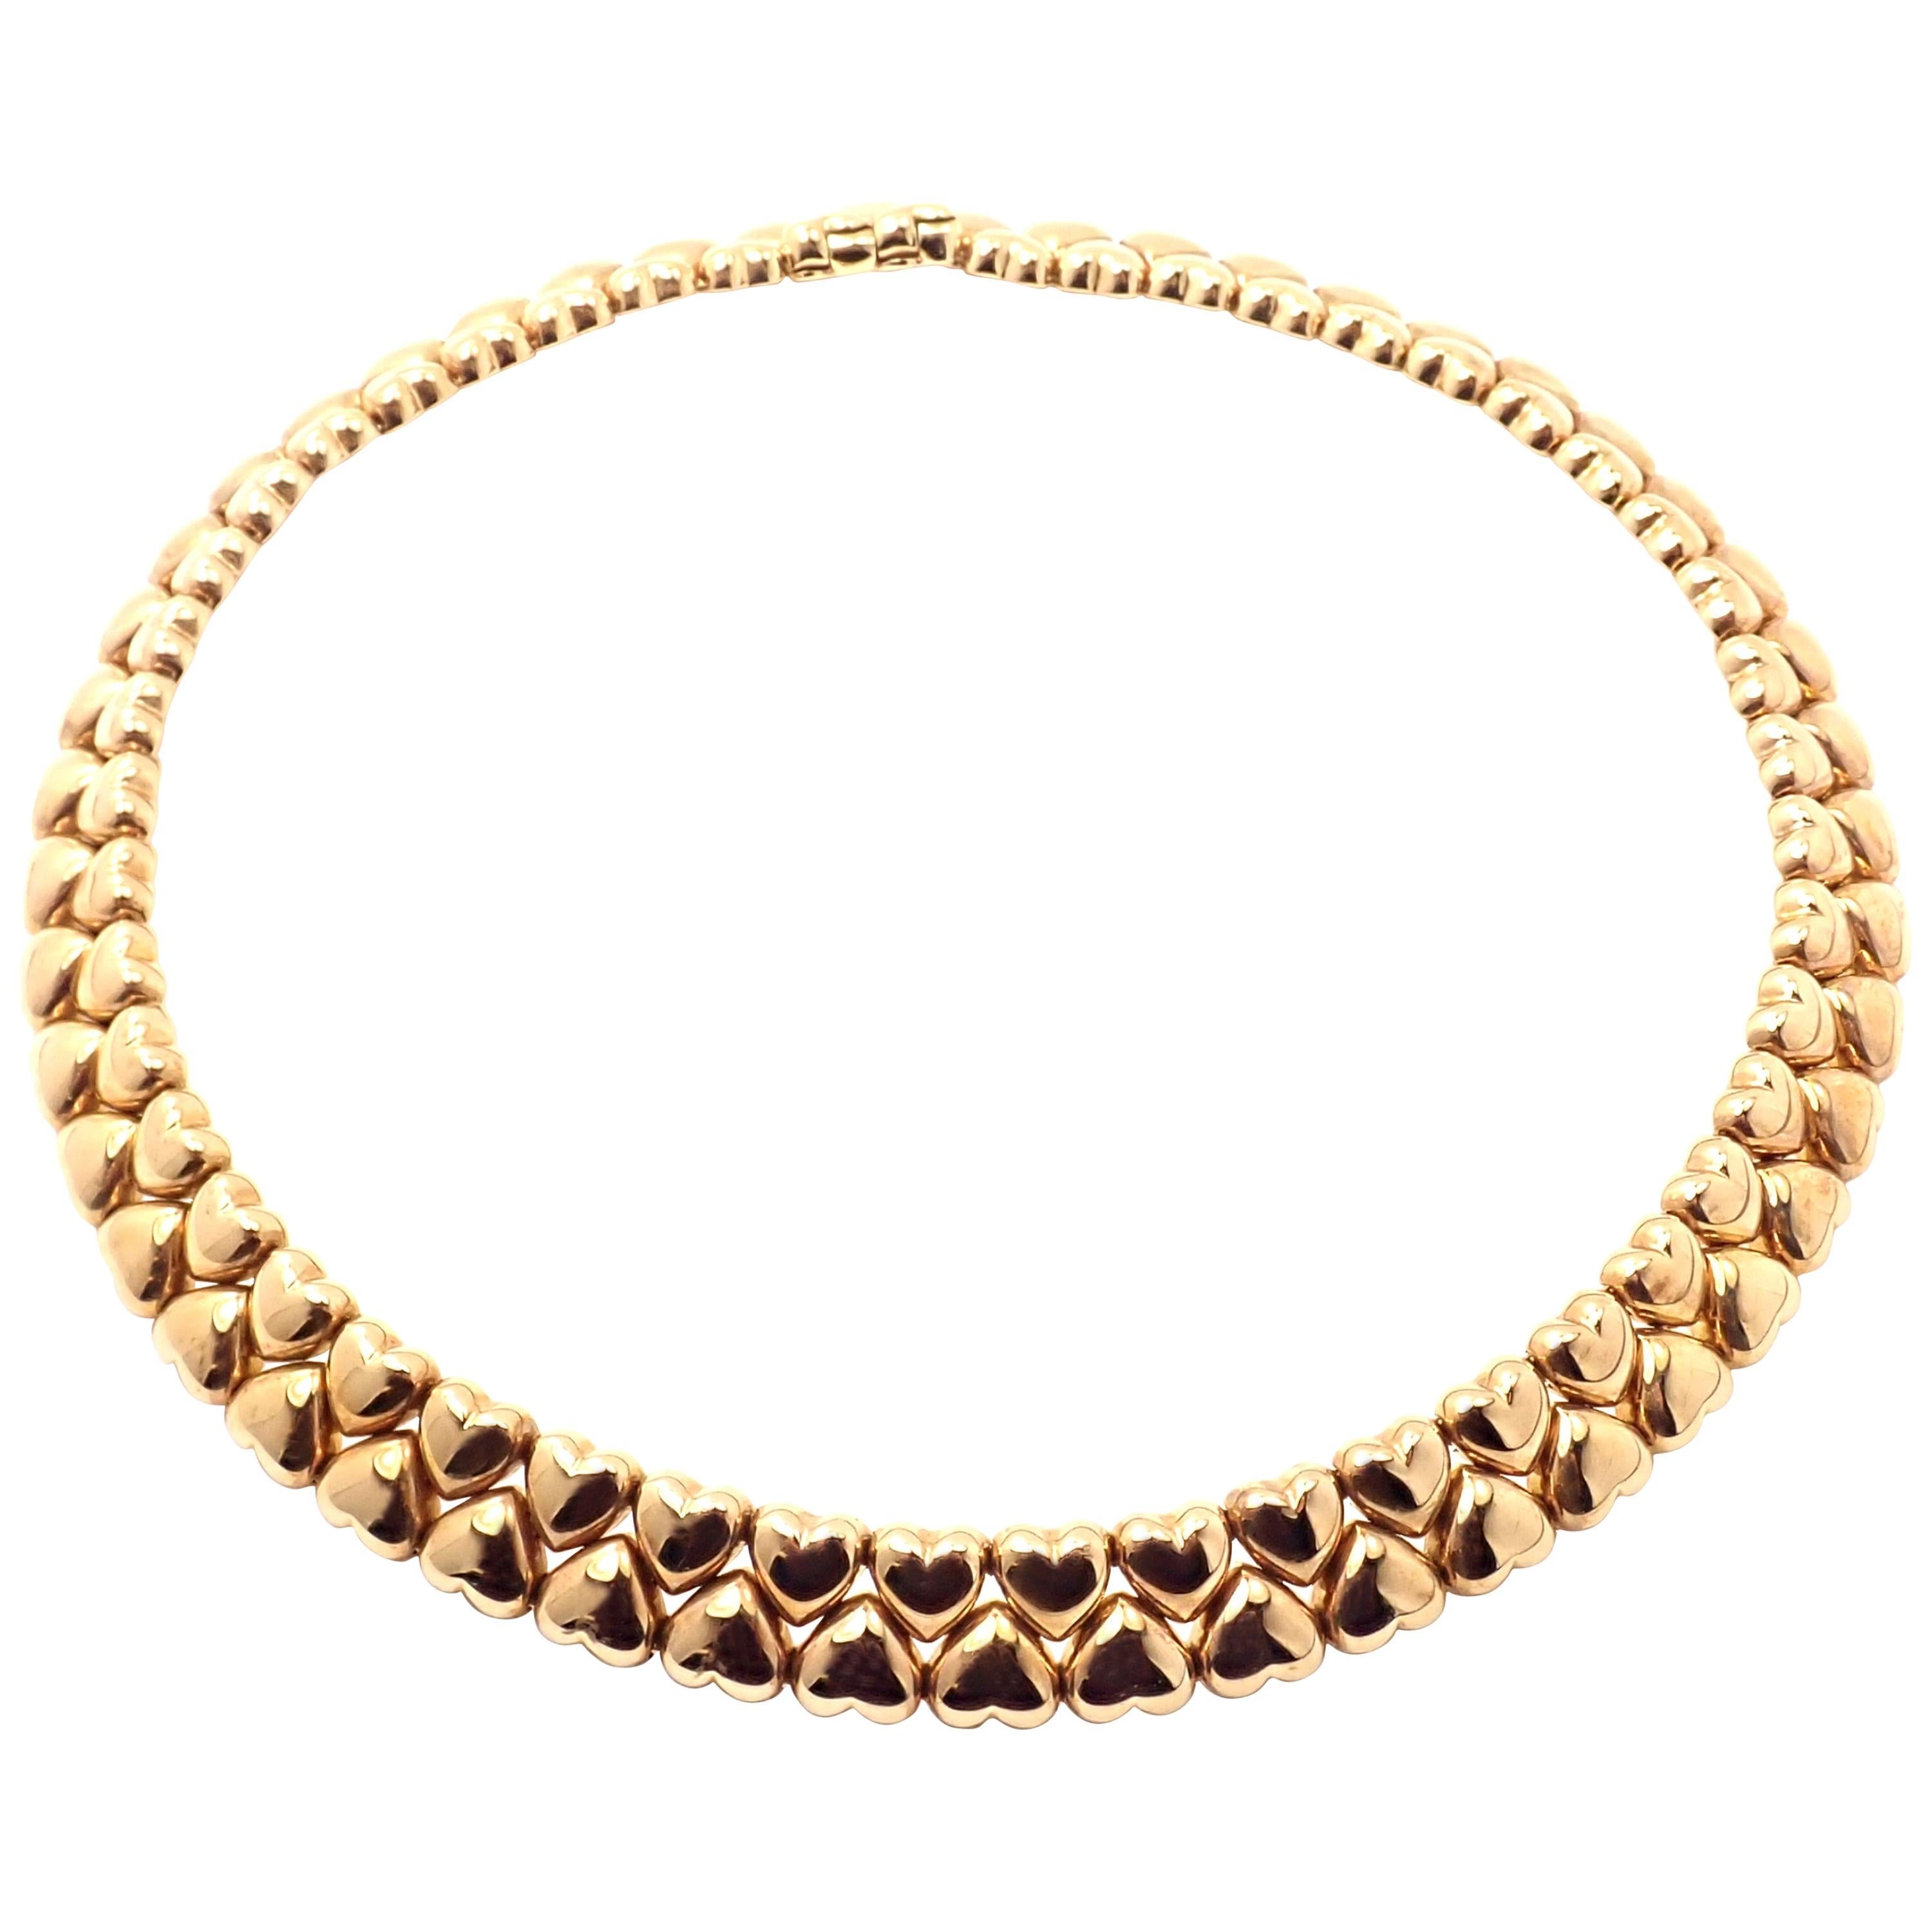 Cartier Heart Choker Yellow Gold Necklace